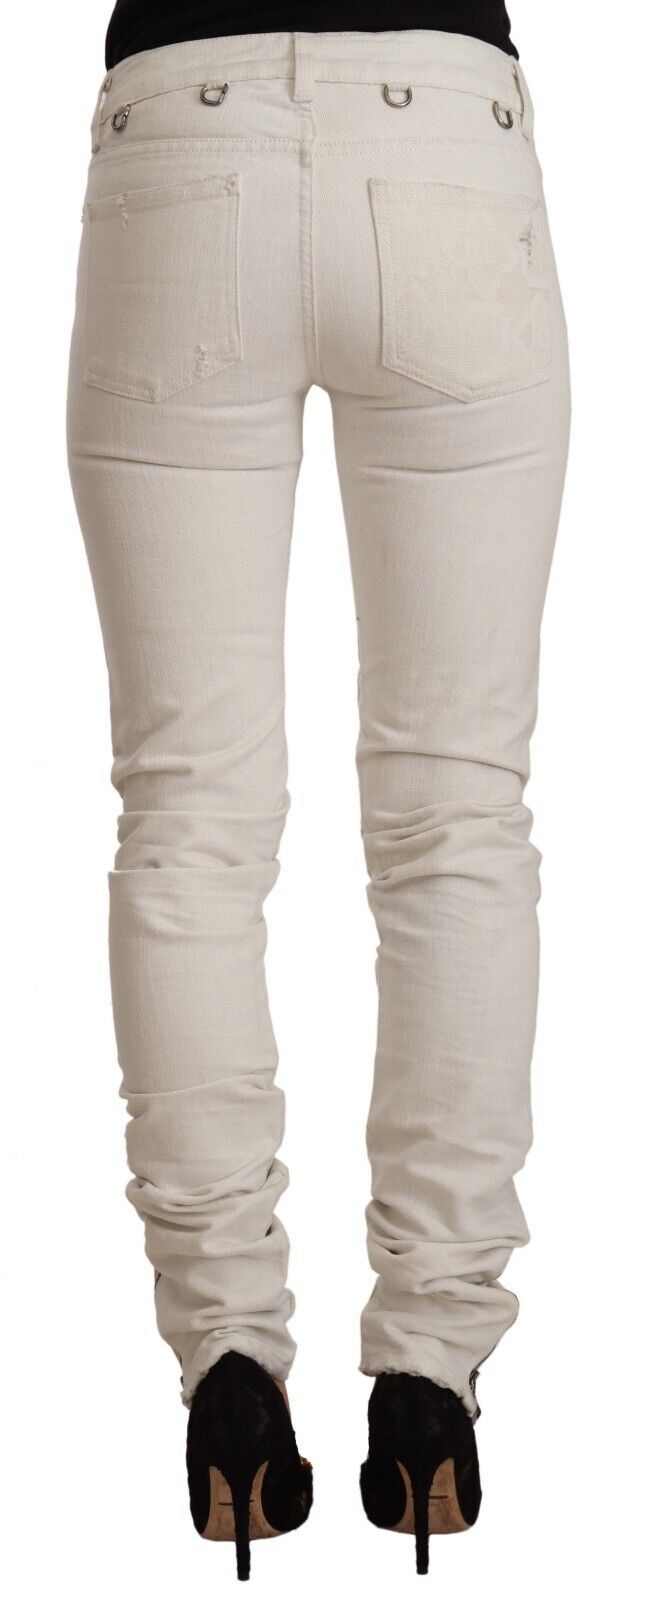 Карл Лагерфелд, бели памучни дънки със средна талия